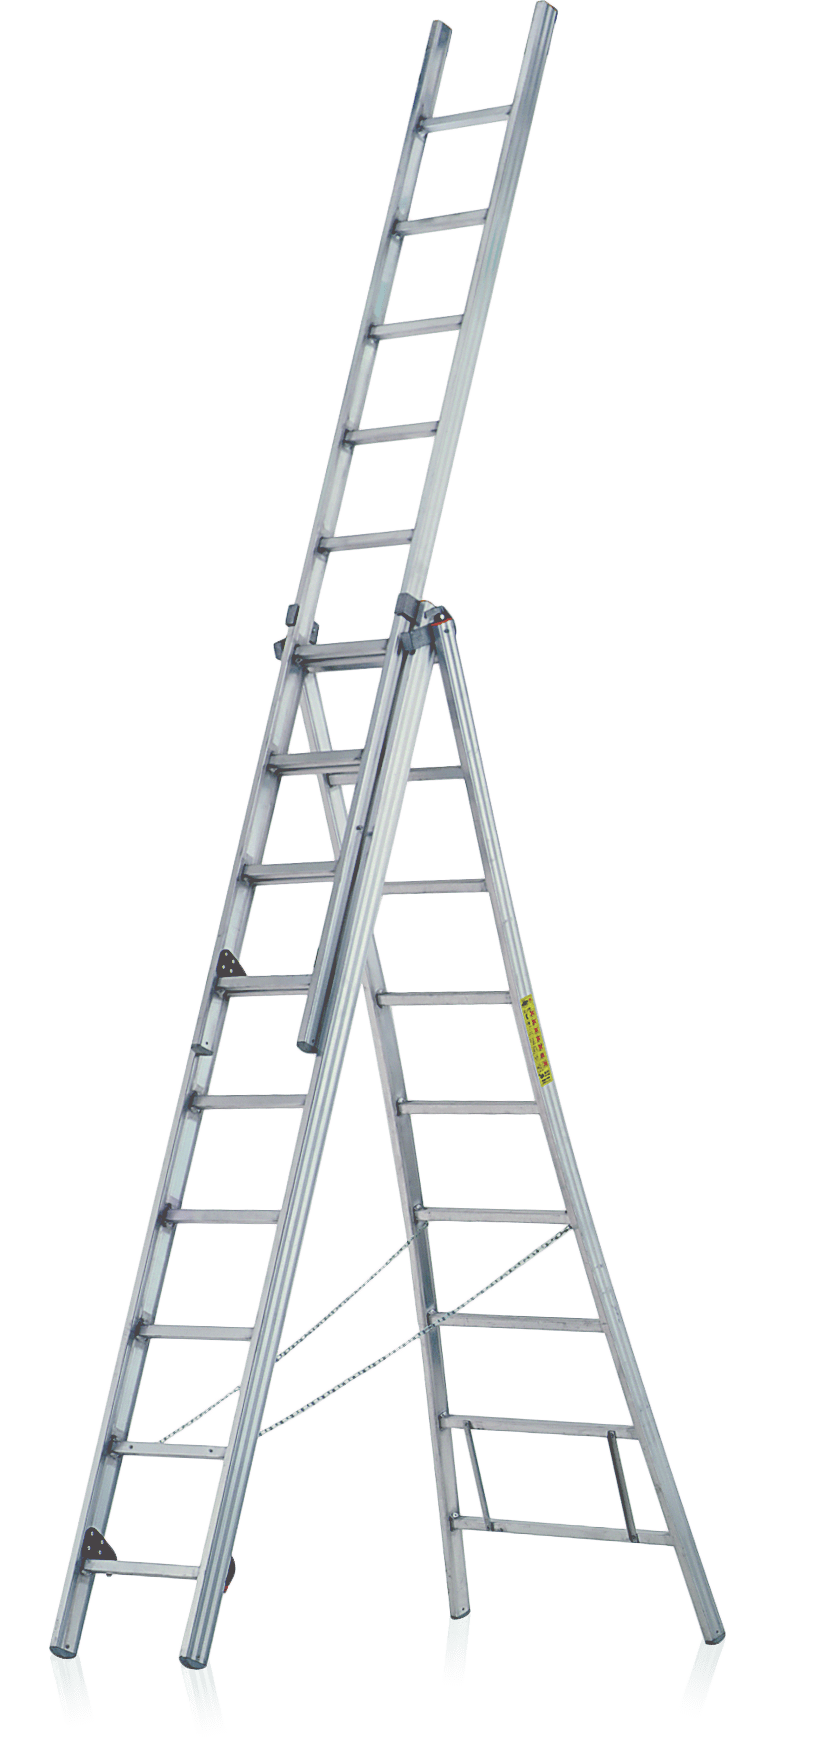 trojdielny rebrík R500